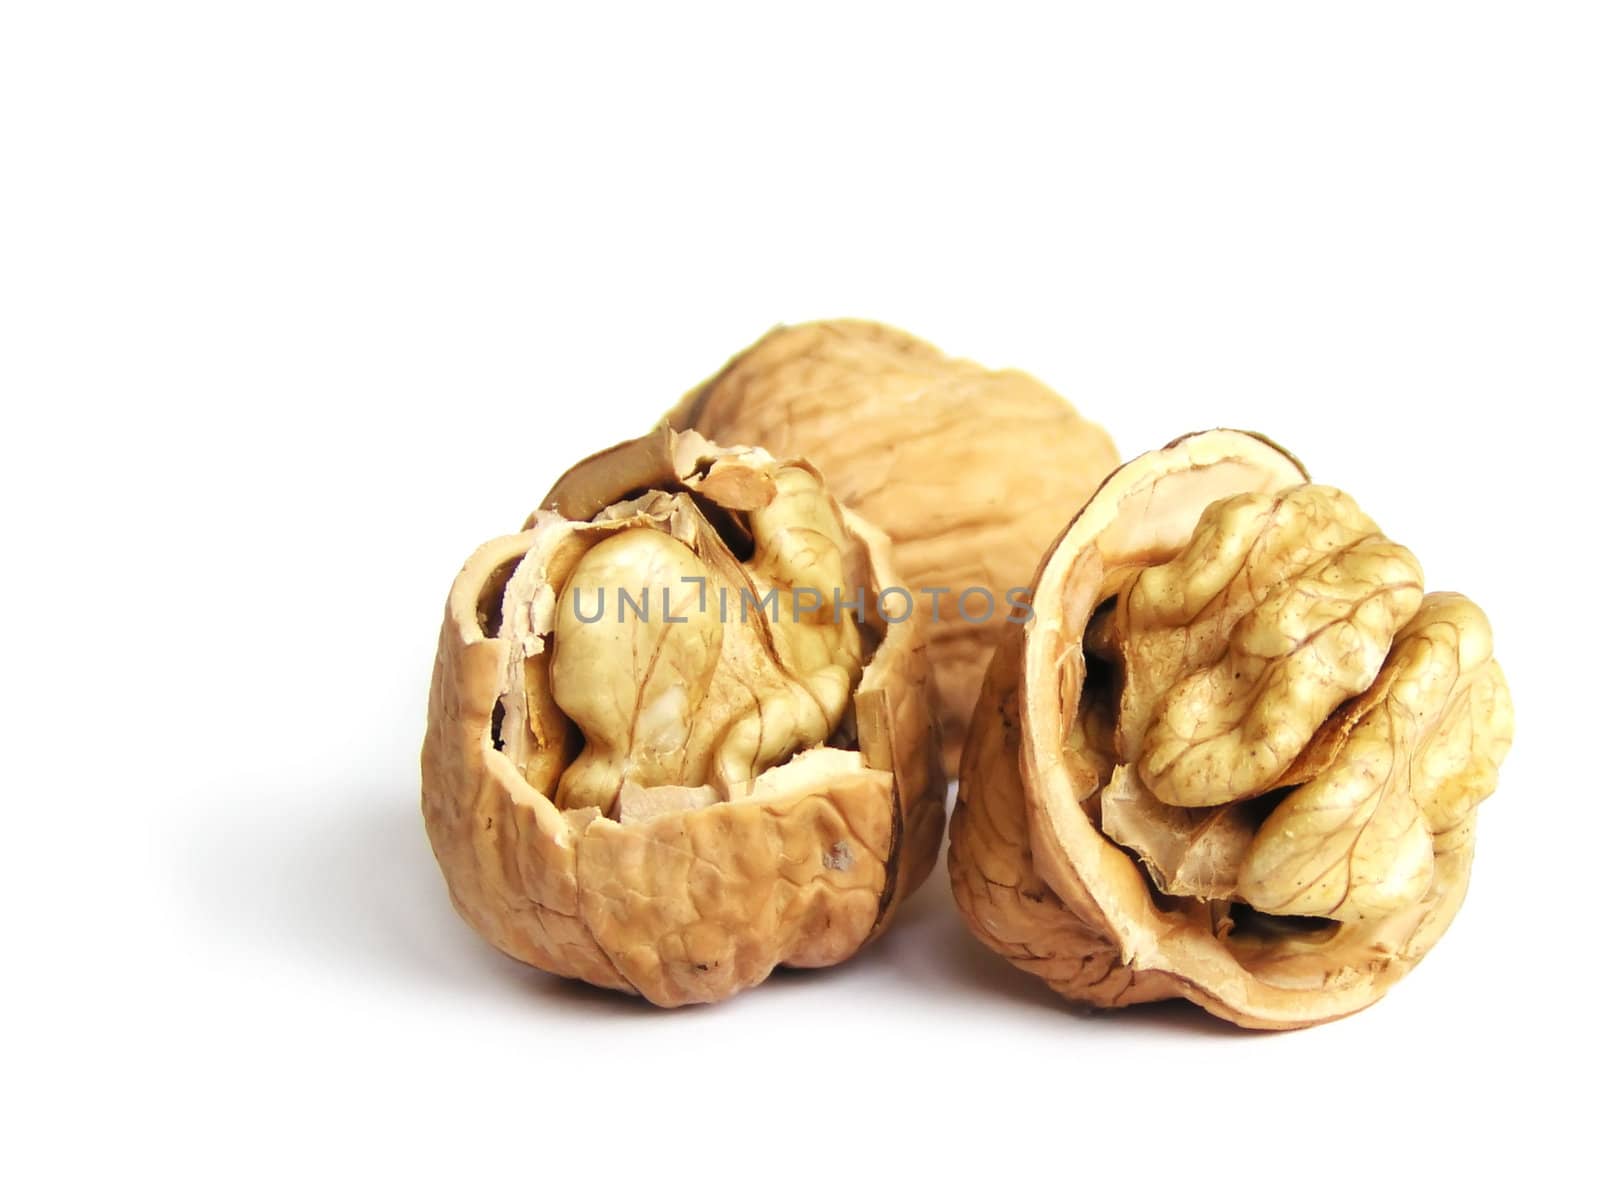 Three walnuts by orson